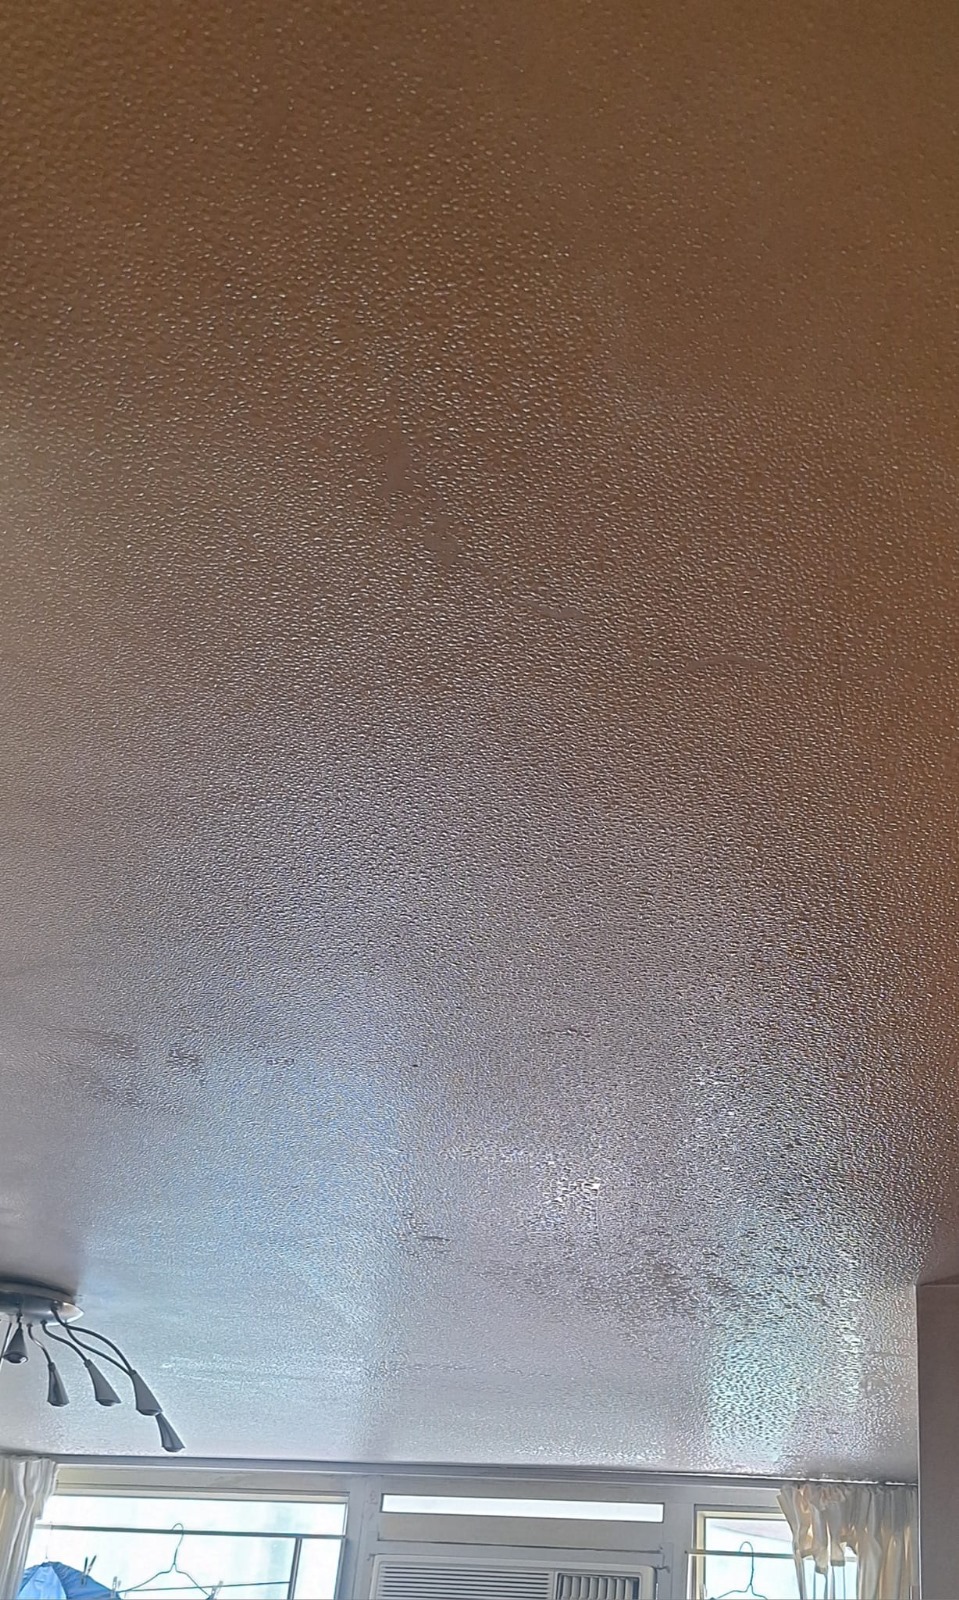 网民分享家中天花板上布满水珠。FB图片